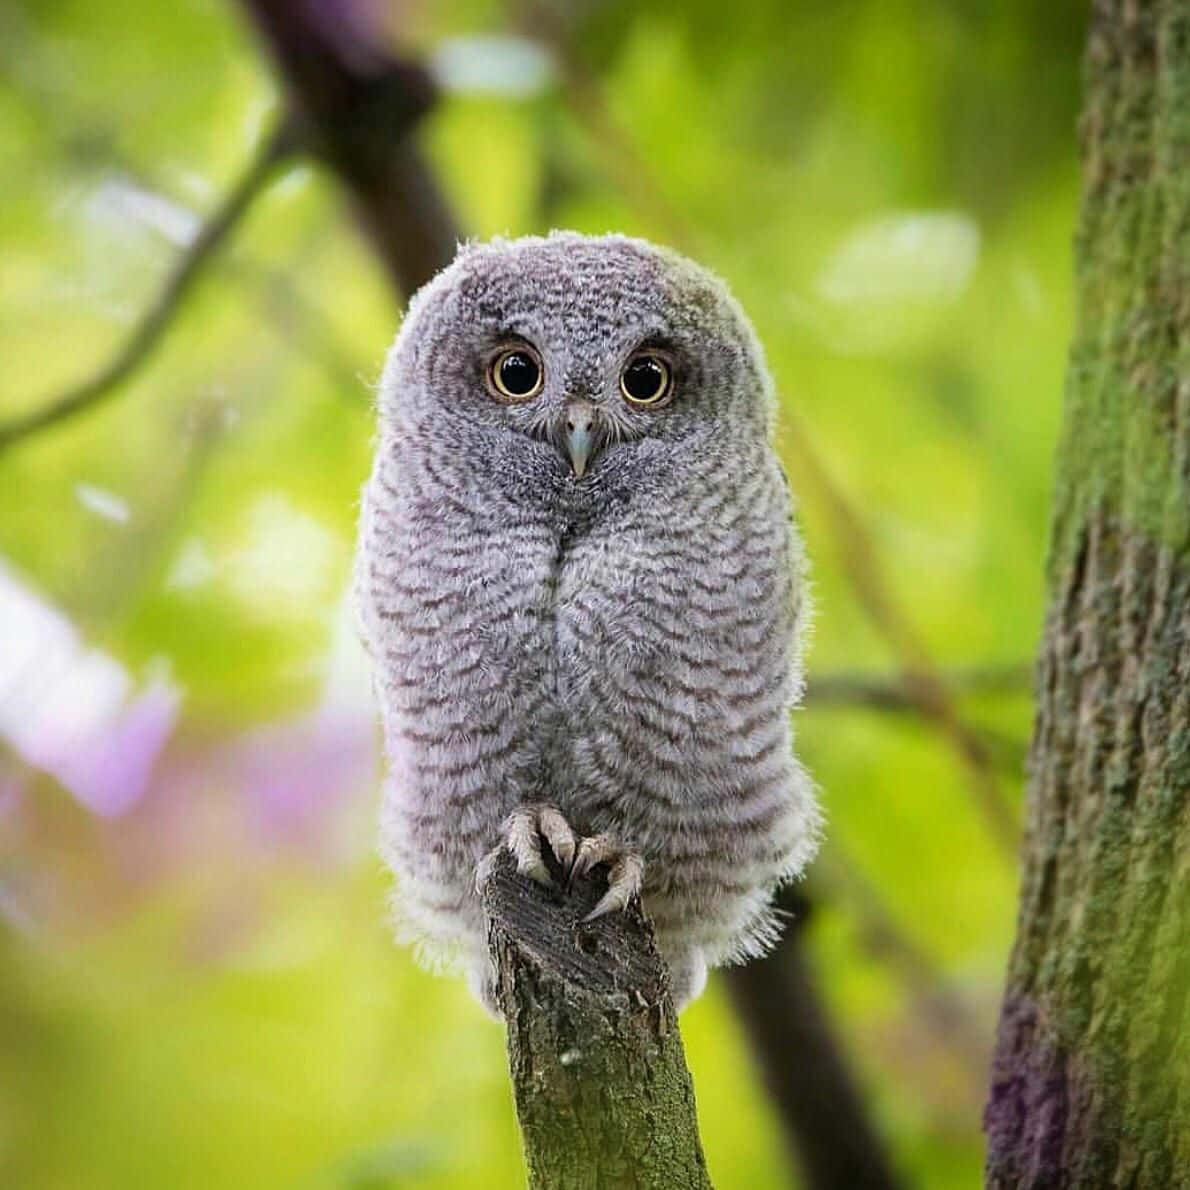 Cute Baby Owl, Looking Keenly